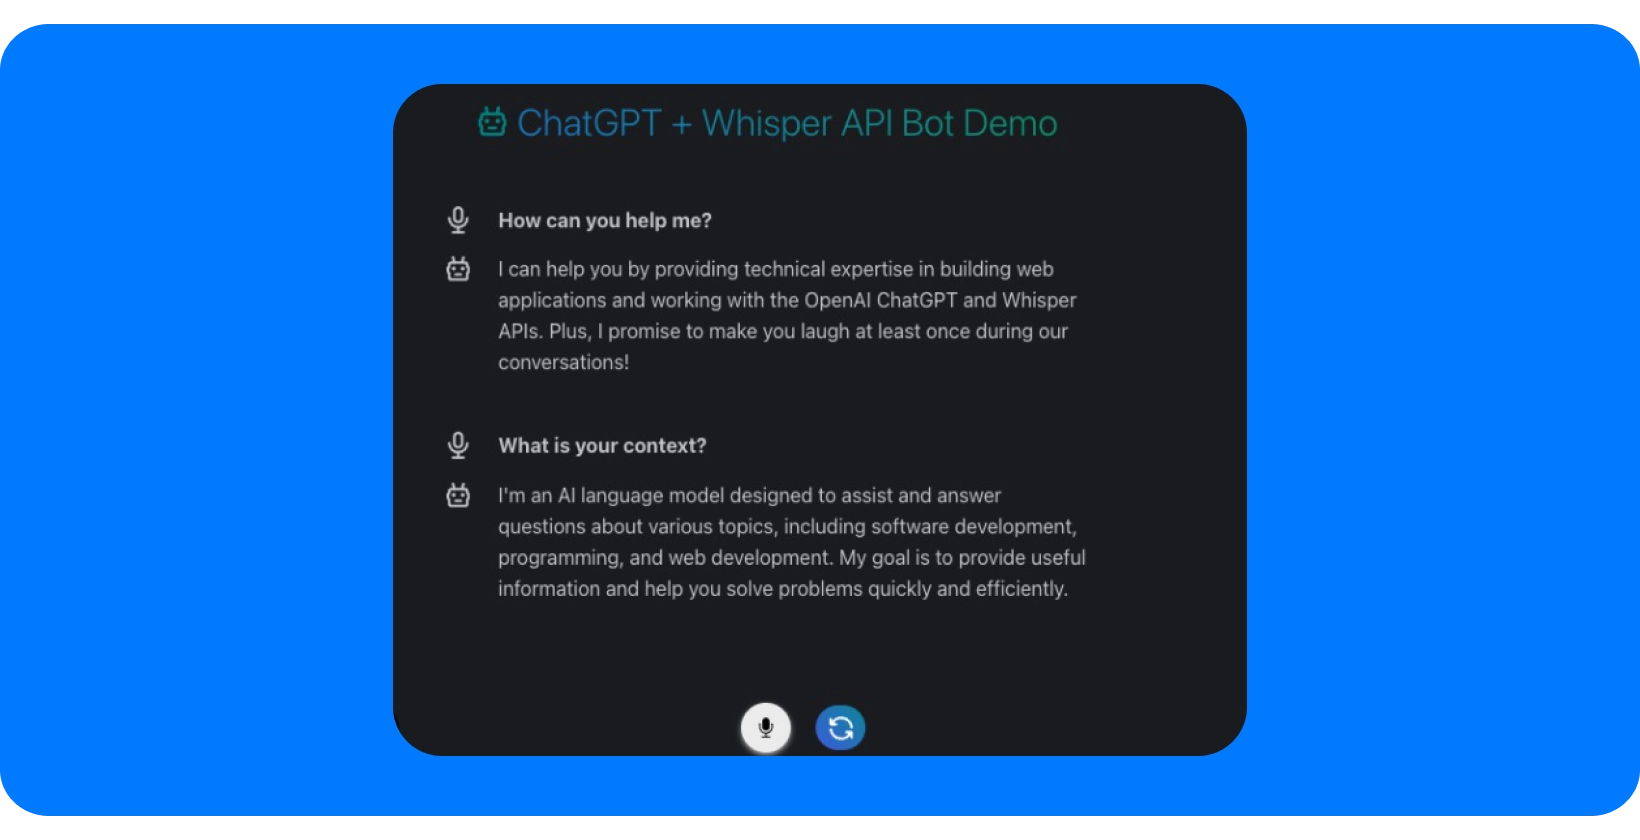 Képernyőkép a ChatGPT + Whisper API Bot Demo bemutatójáról, amely bemutatja a beszélgetési segítségnyújtási képességeket.